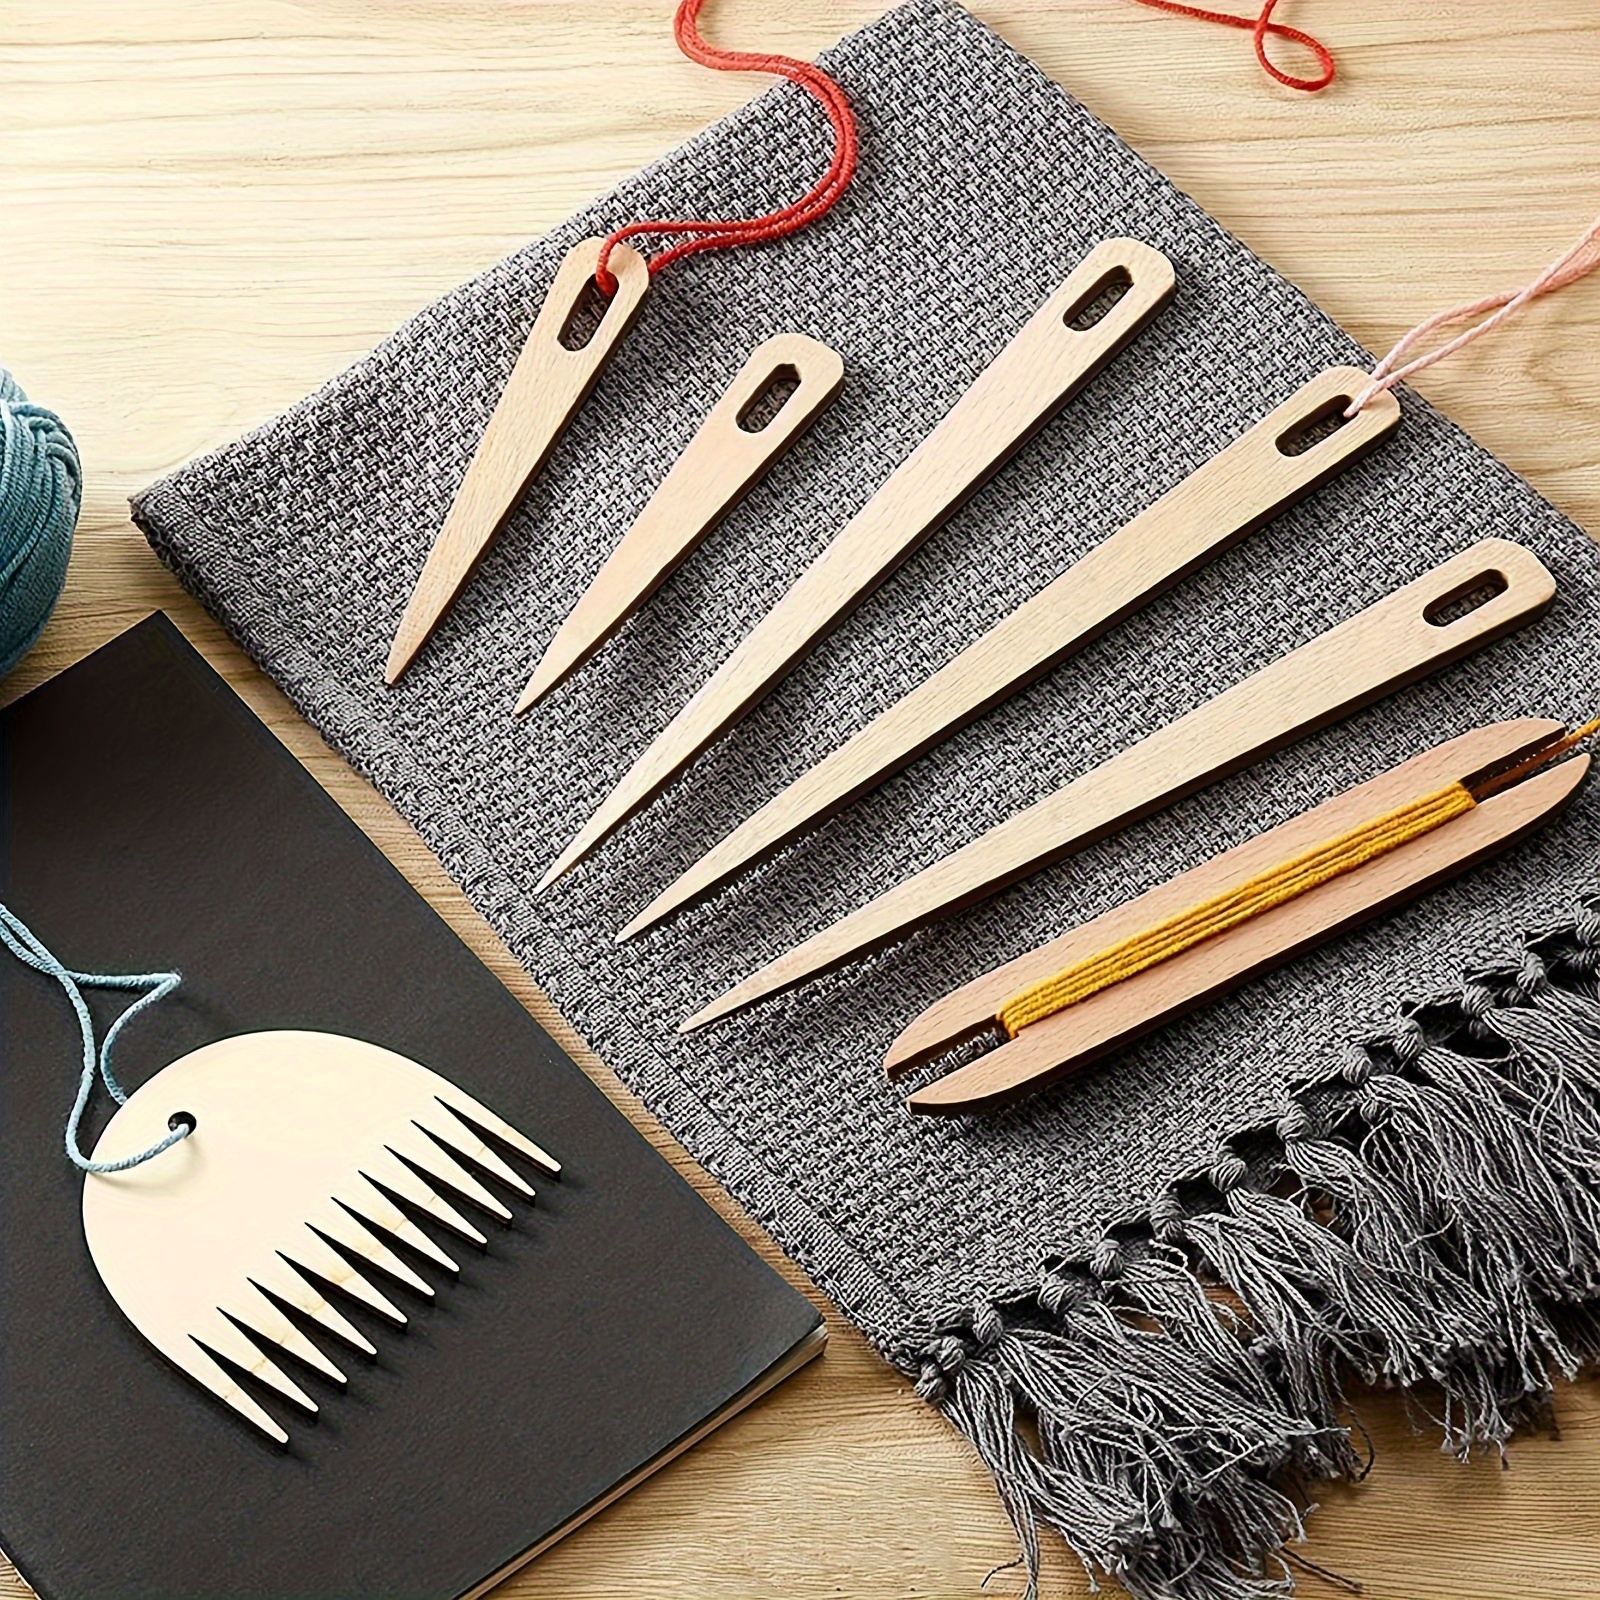 

7pcs/set Wood Hand Loom Stick Set, Diy Handcrafts Tools Include 5pcs Wooden Weaving Crochet Needle, 1pc Wooden Shuttle, 1pc Wooden Weaving Comb For Knitting Crafts Art Supplies